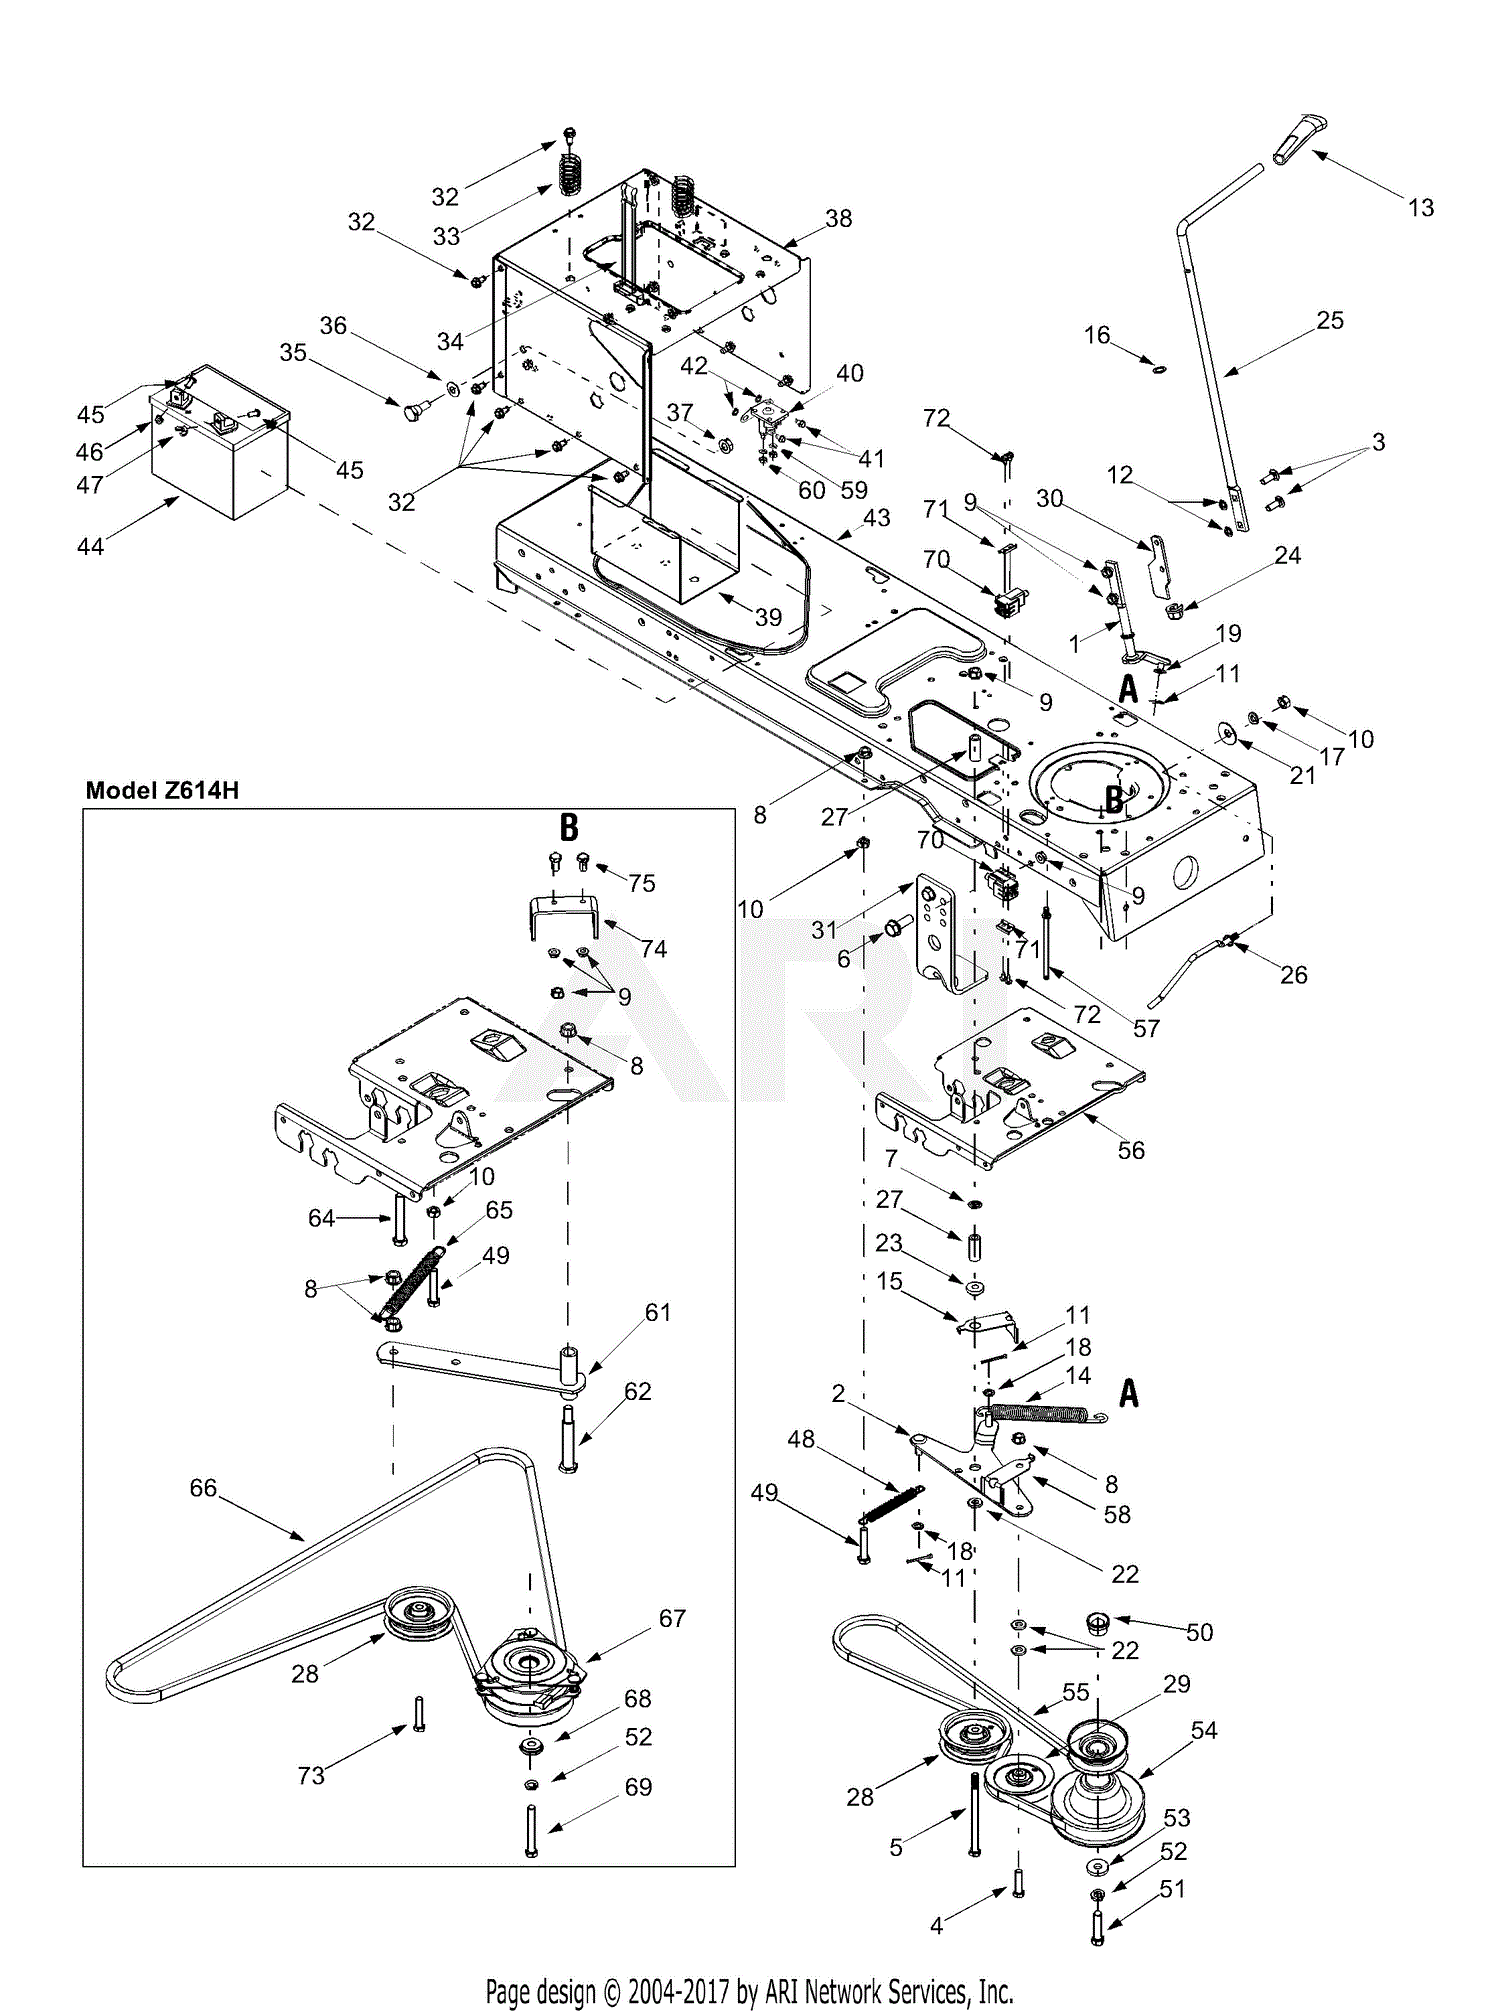 13az614h452 Wiring Diagram Yard